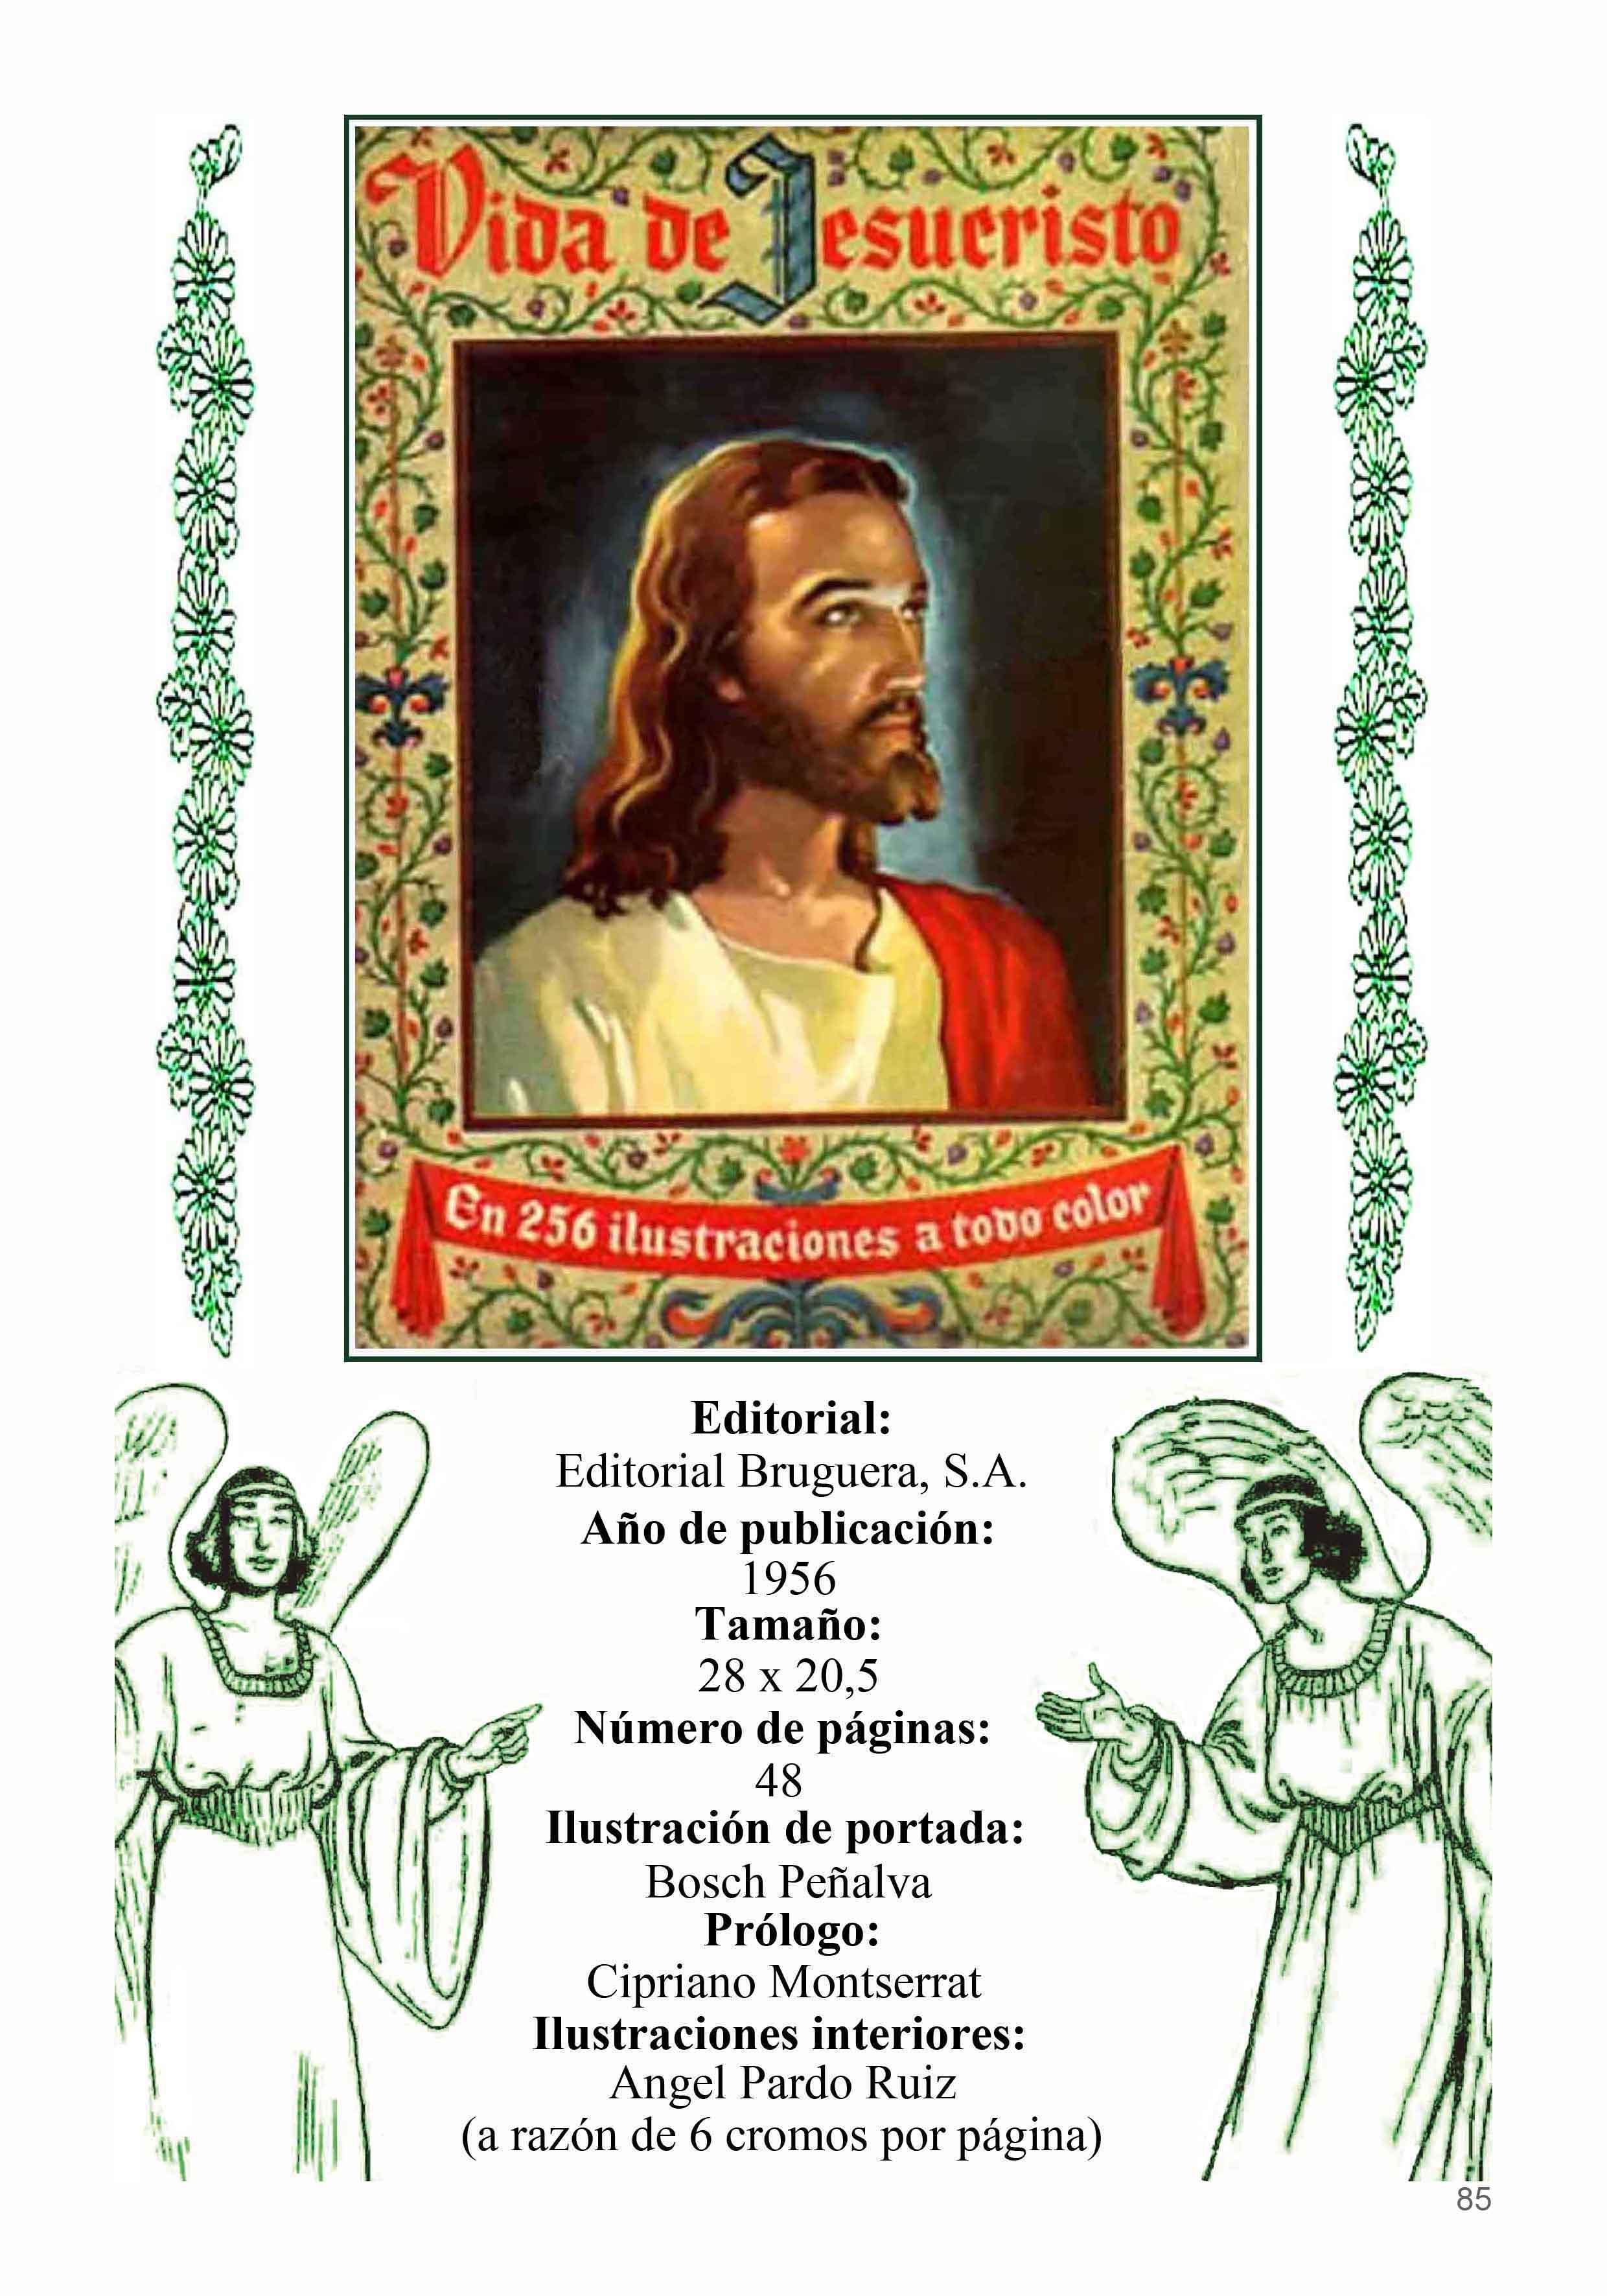 Los Archivos de El Boletin: Los Relatos Cortos de Angel Pardo numero 06: La vida de Jesucristo, etc